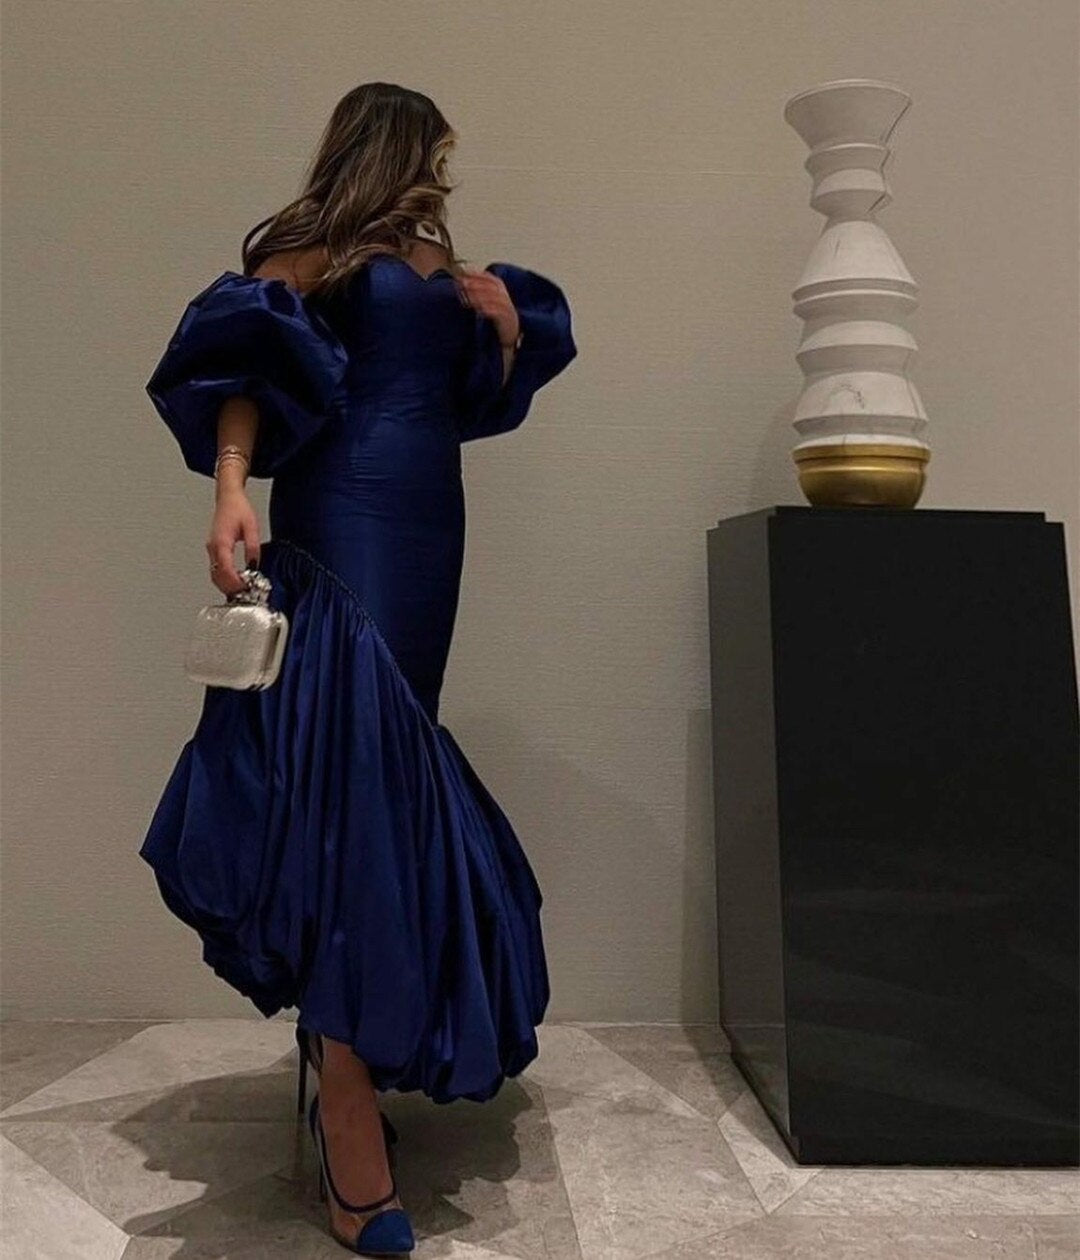 blue prom dresses, evening dresses,party dresses, sexy formal dress      fg3348